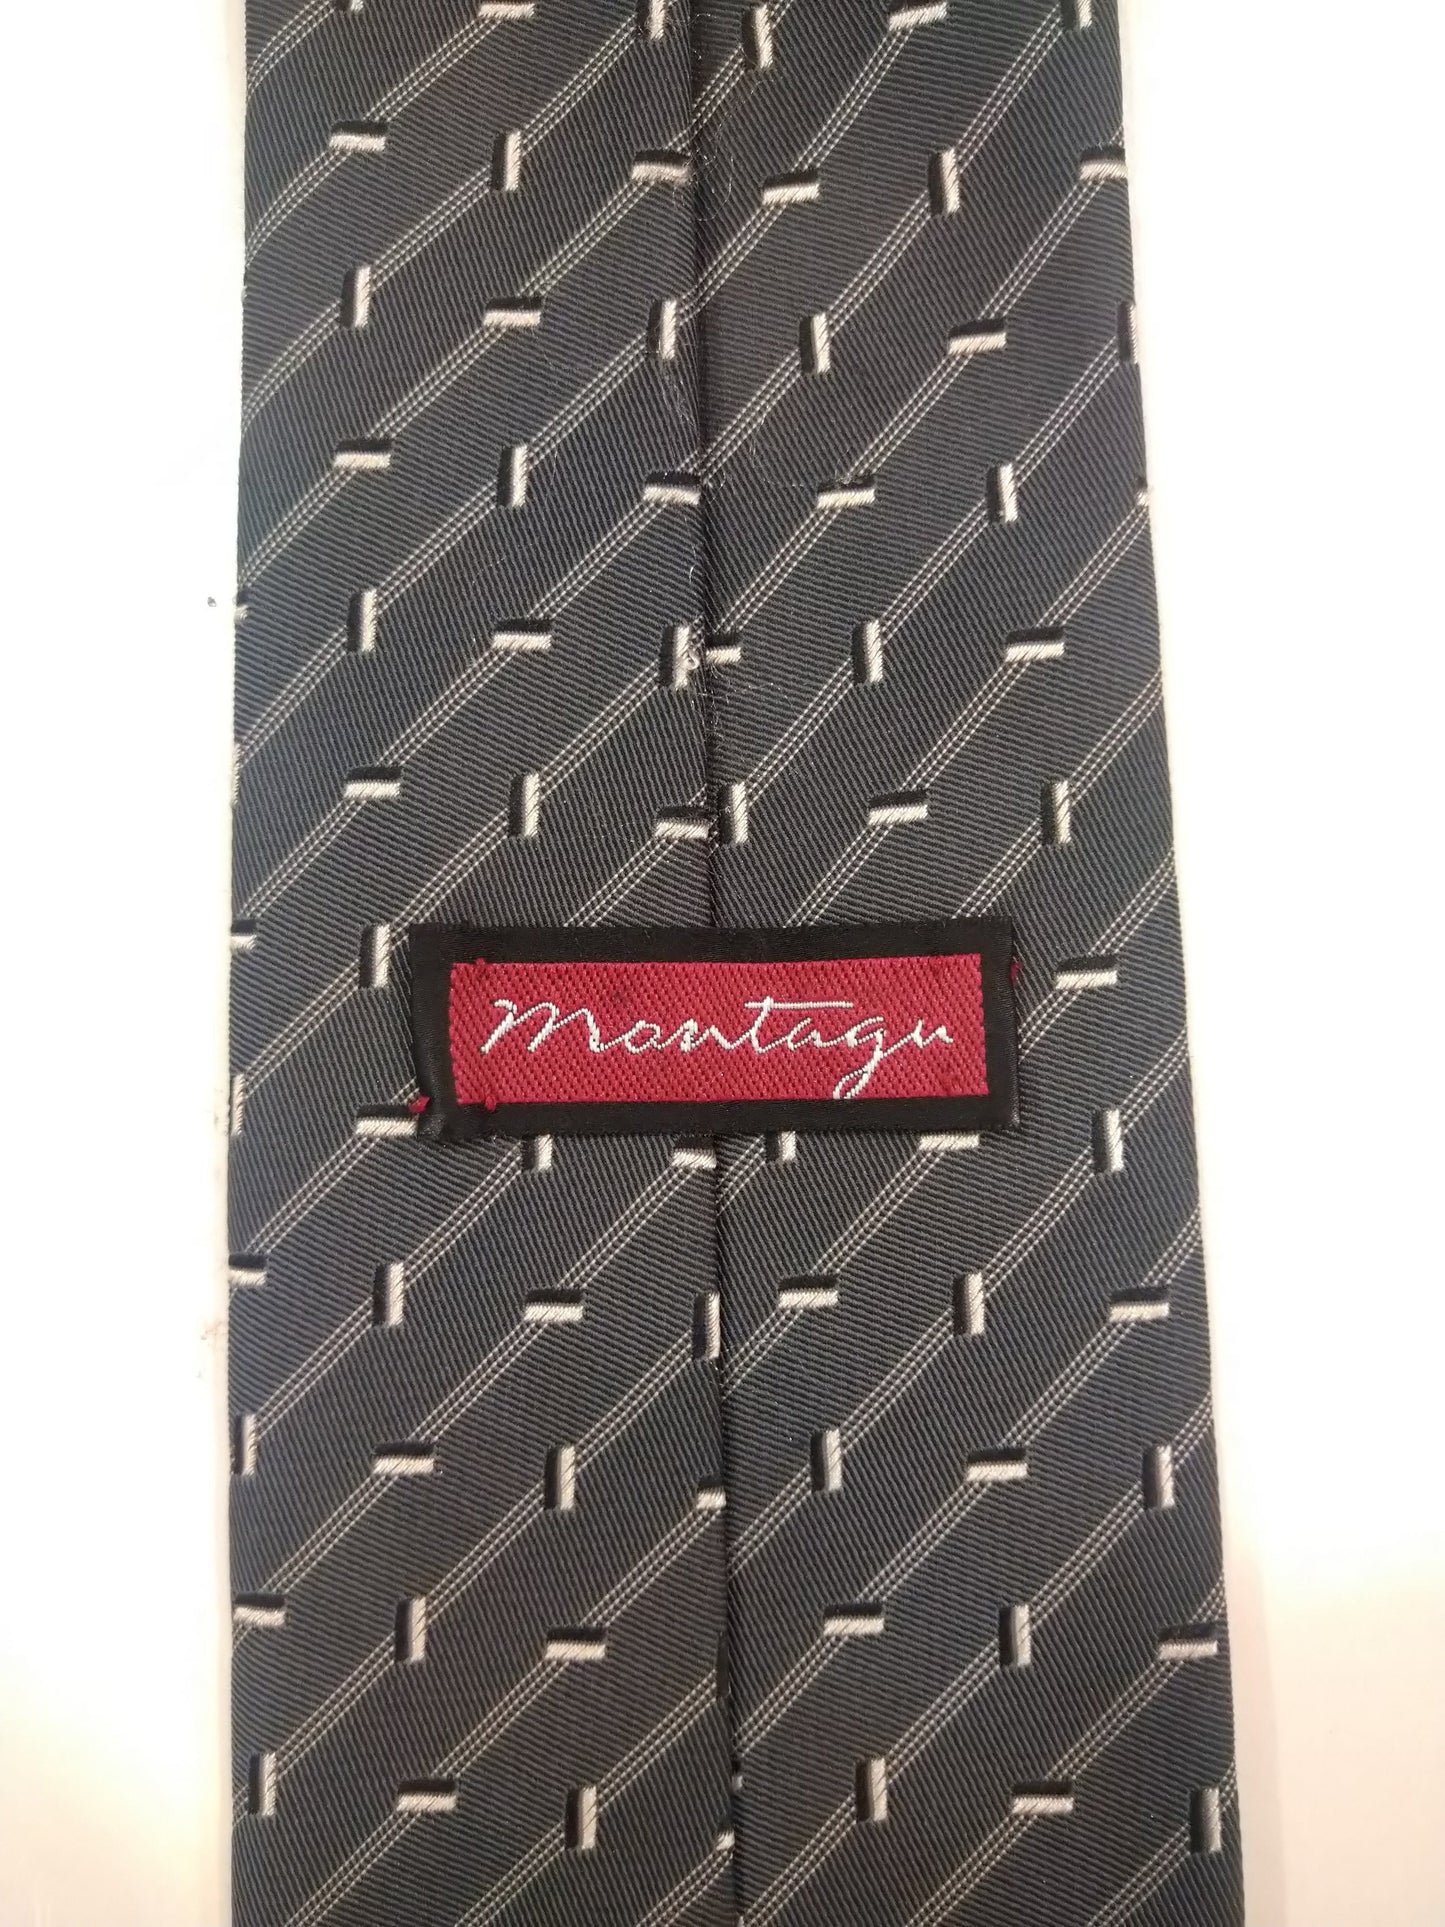 Montagu polyester tie. Gray white motif.